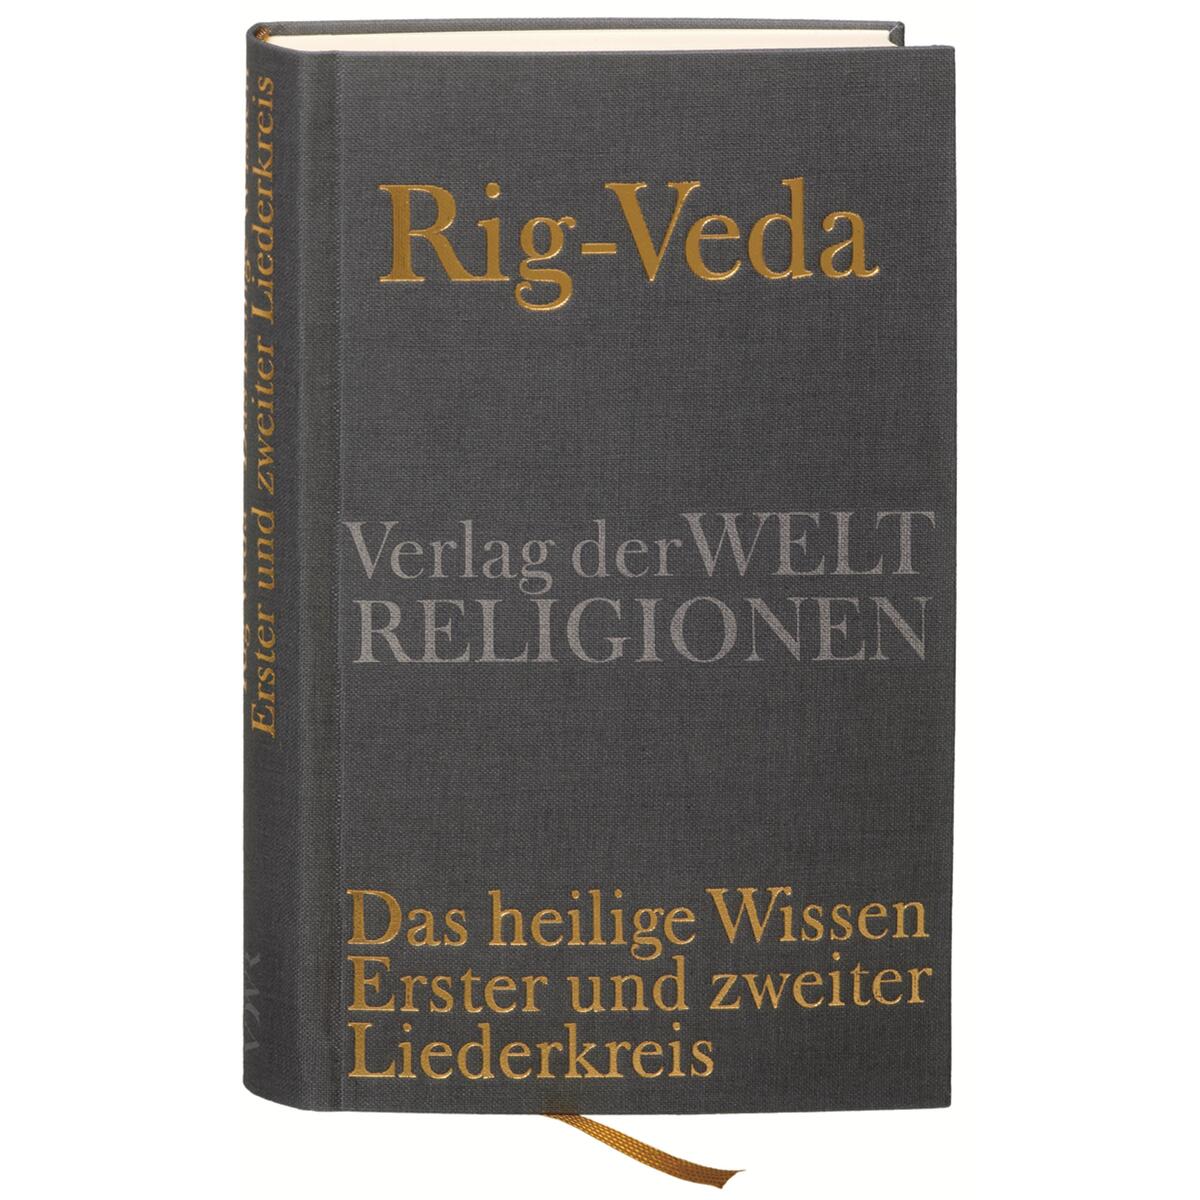 Rig-Veda - Das heilige Wissen von Verlag der Weltreligionen